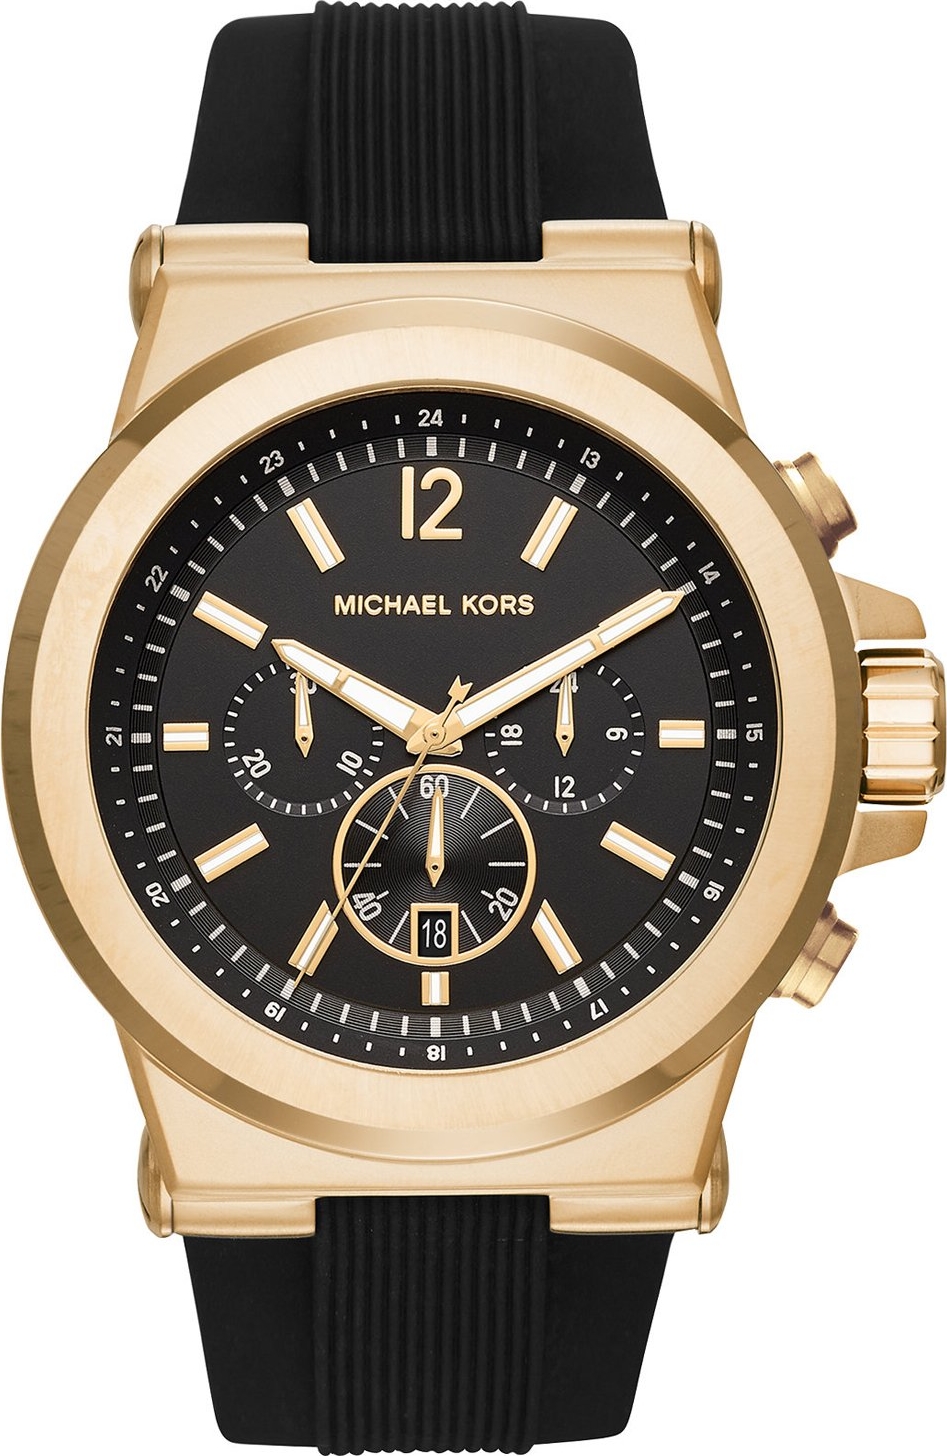 Cập nhật 61+ về michael kors dylan watch hay nhất - cdgdbentre.edu.vn